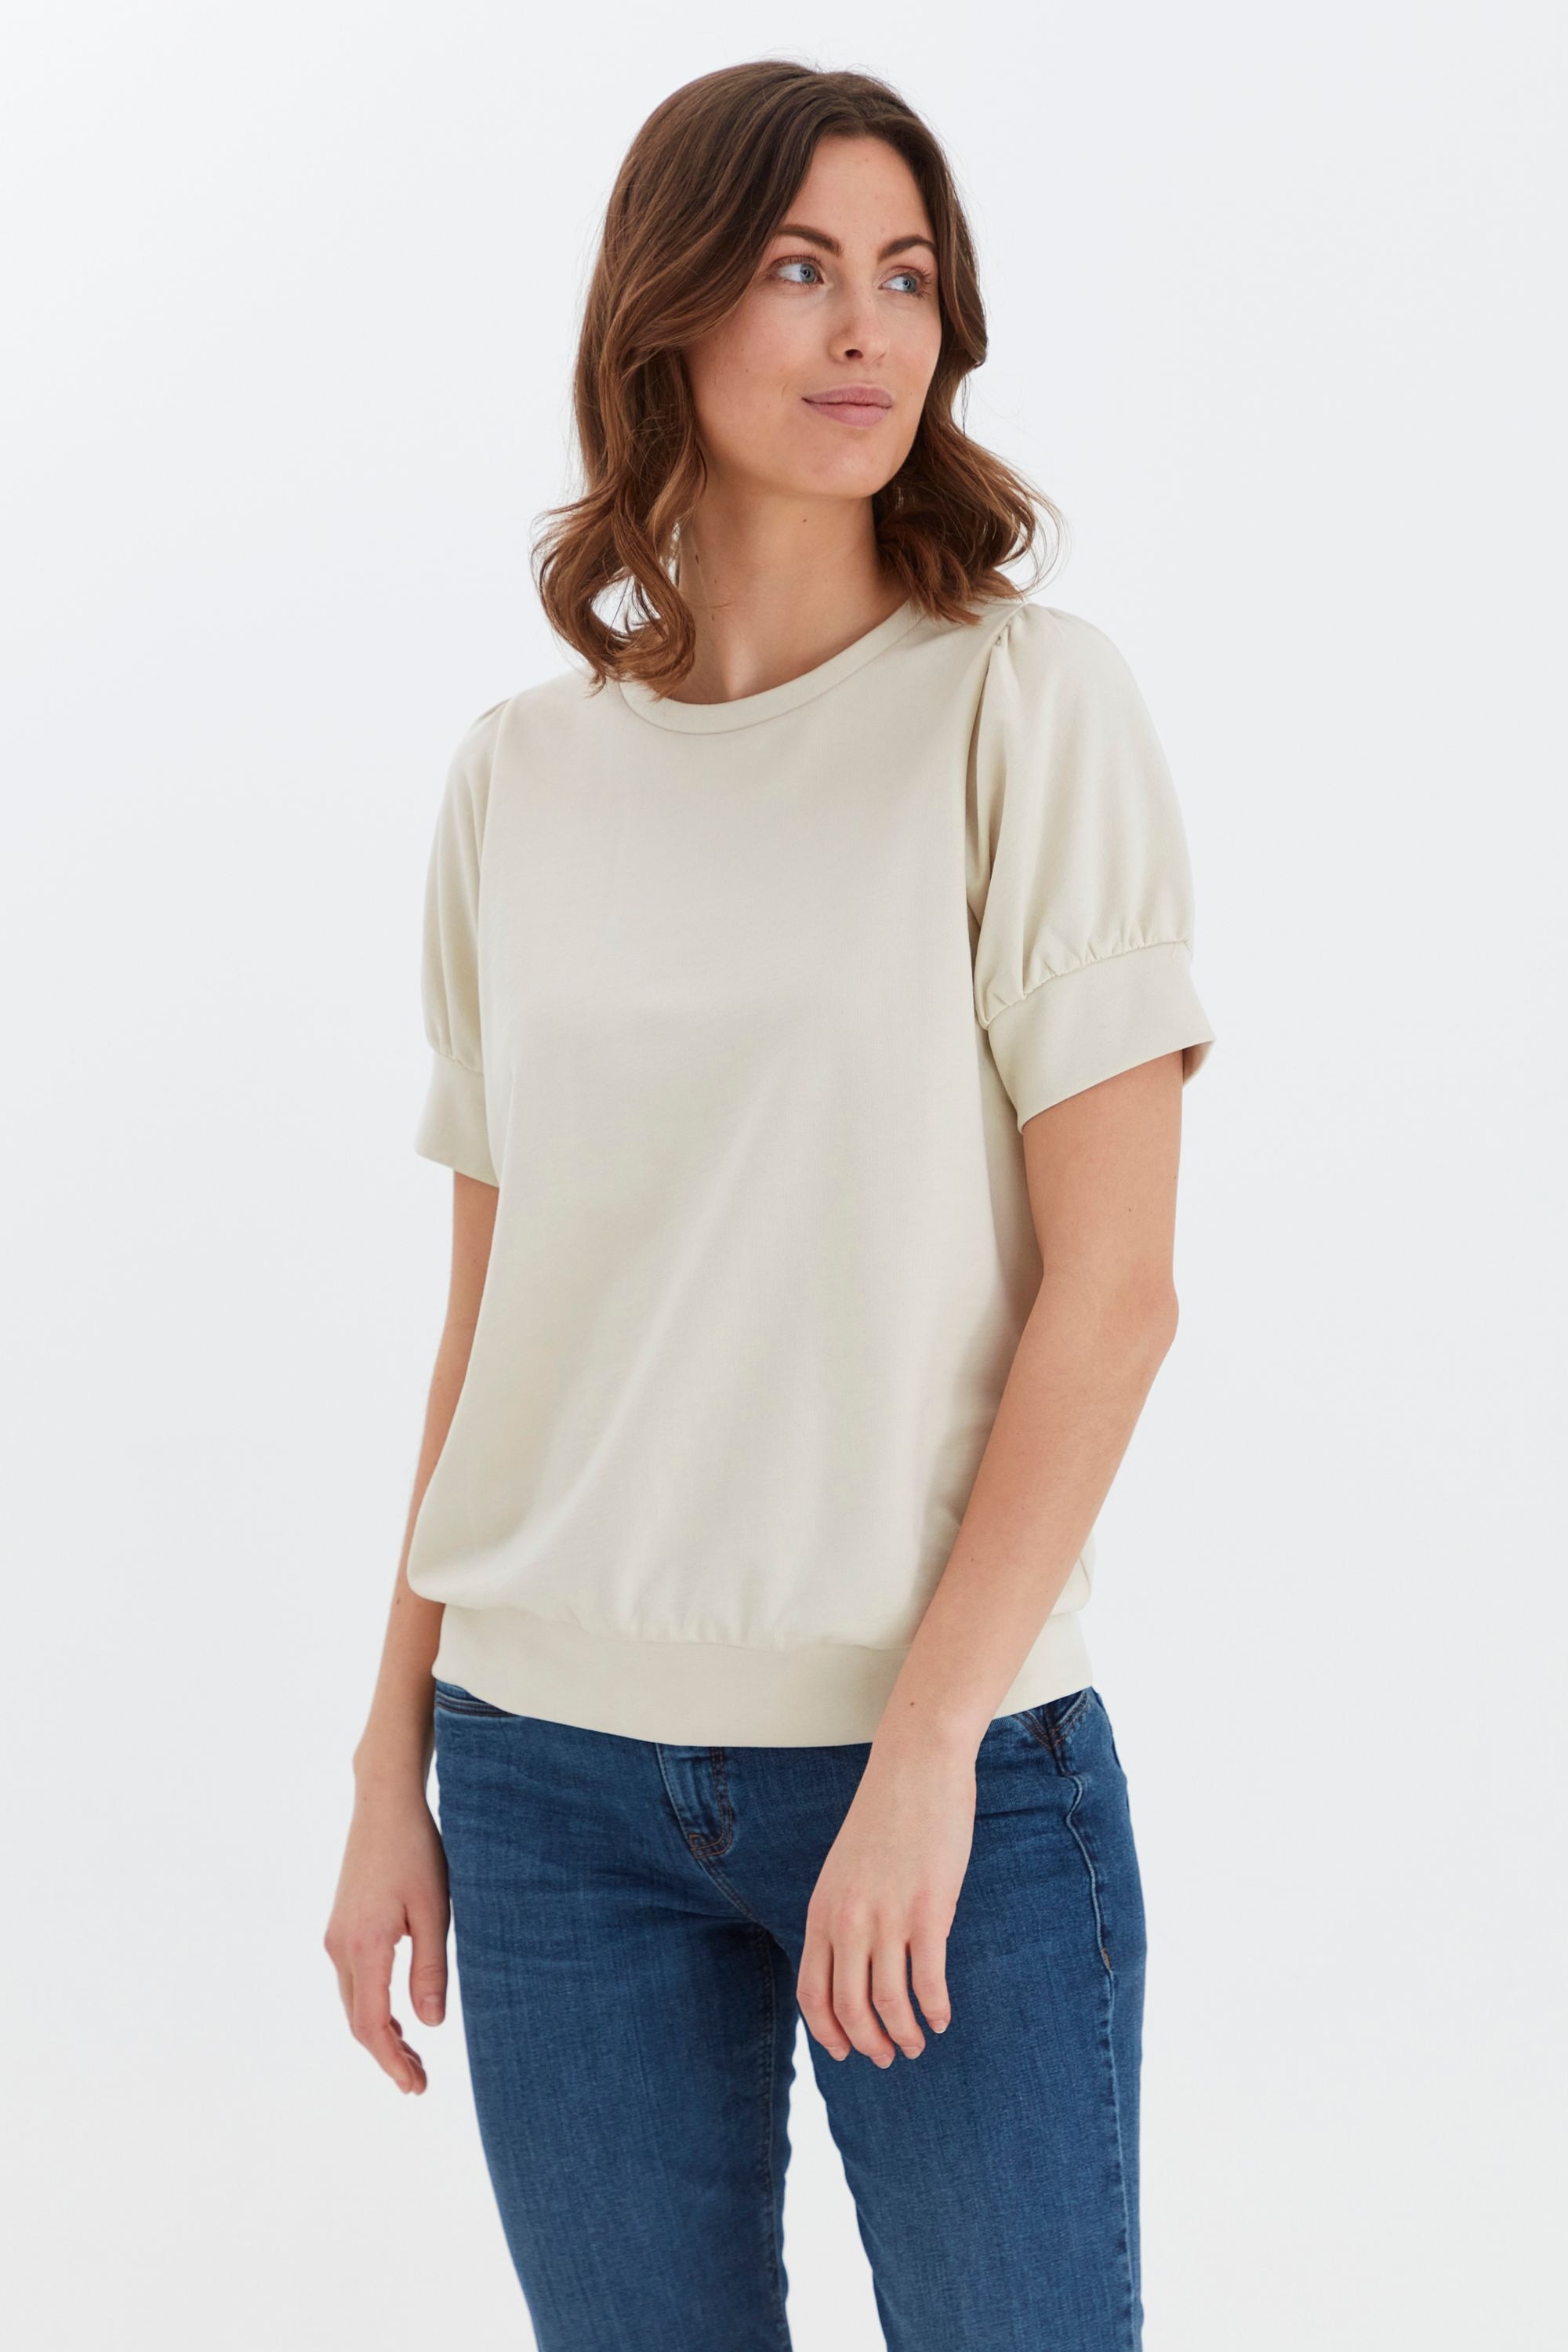 Mesh- & Netz-T-Shirts für Damen | BAUR kaufen online